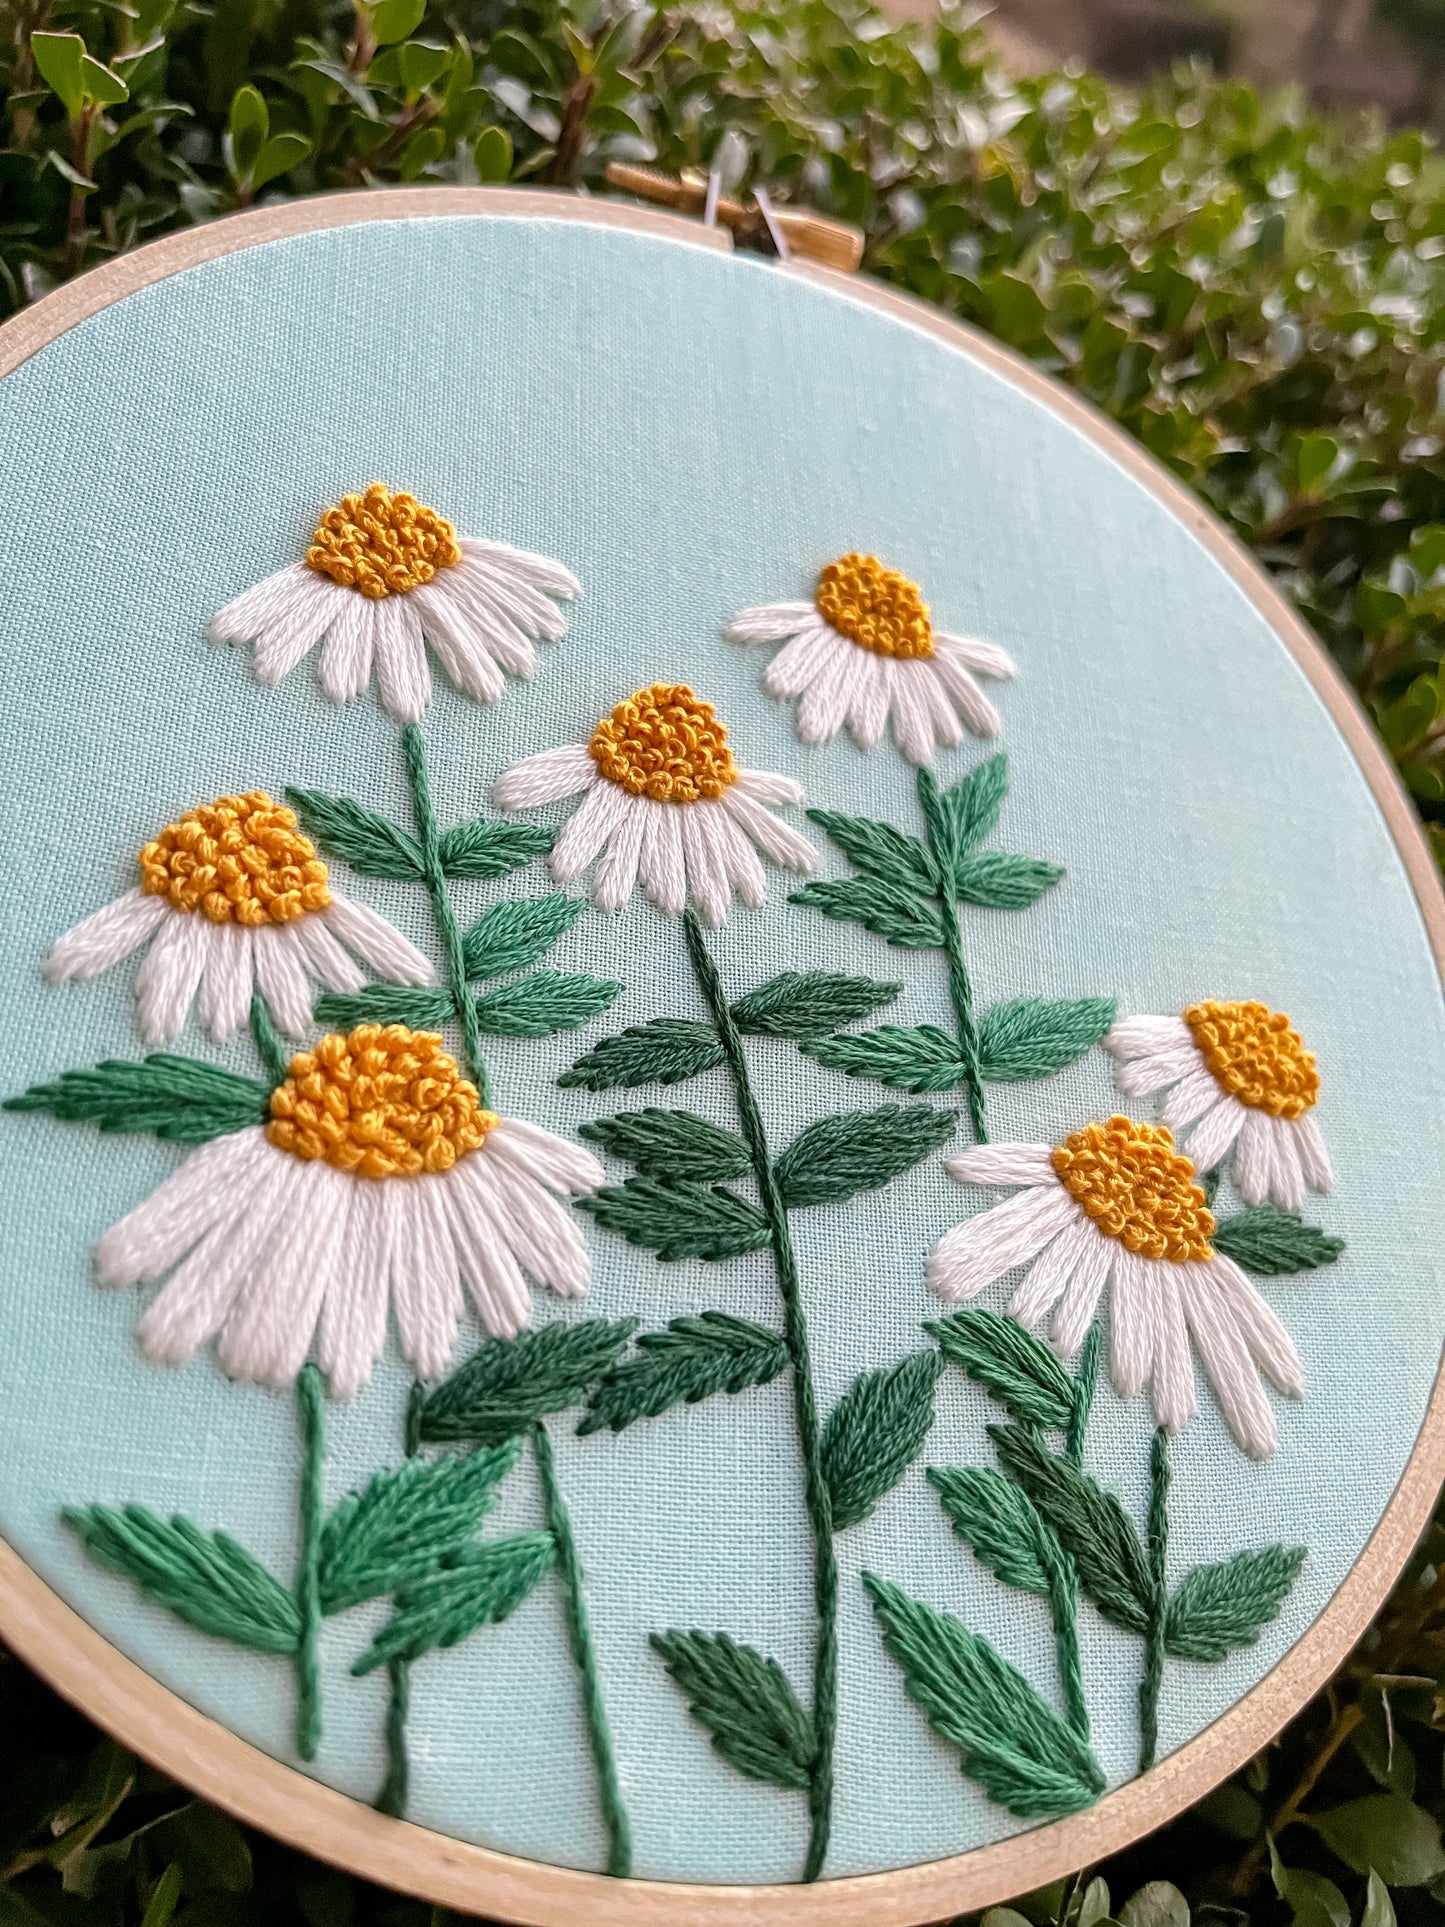 FULL KIT - Daisy Field Florals Kit - DIY Embroidery Kit, Floral Embroidery, Embroidery Pattern